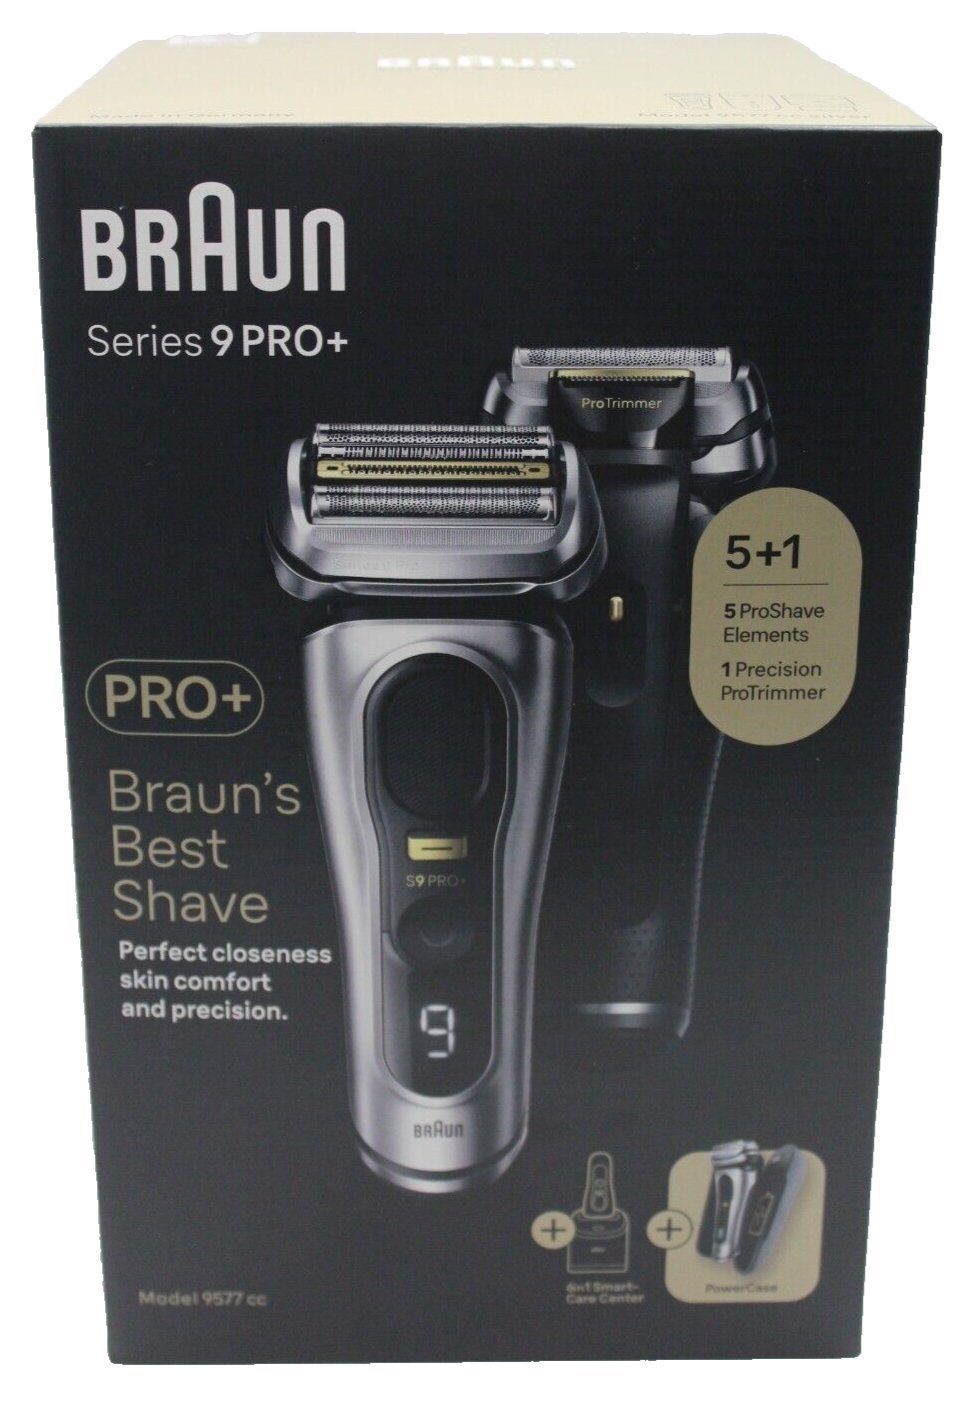 Braun Series 9 Pro Premium Rasierer Herren mit 4+1 Scherkopf